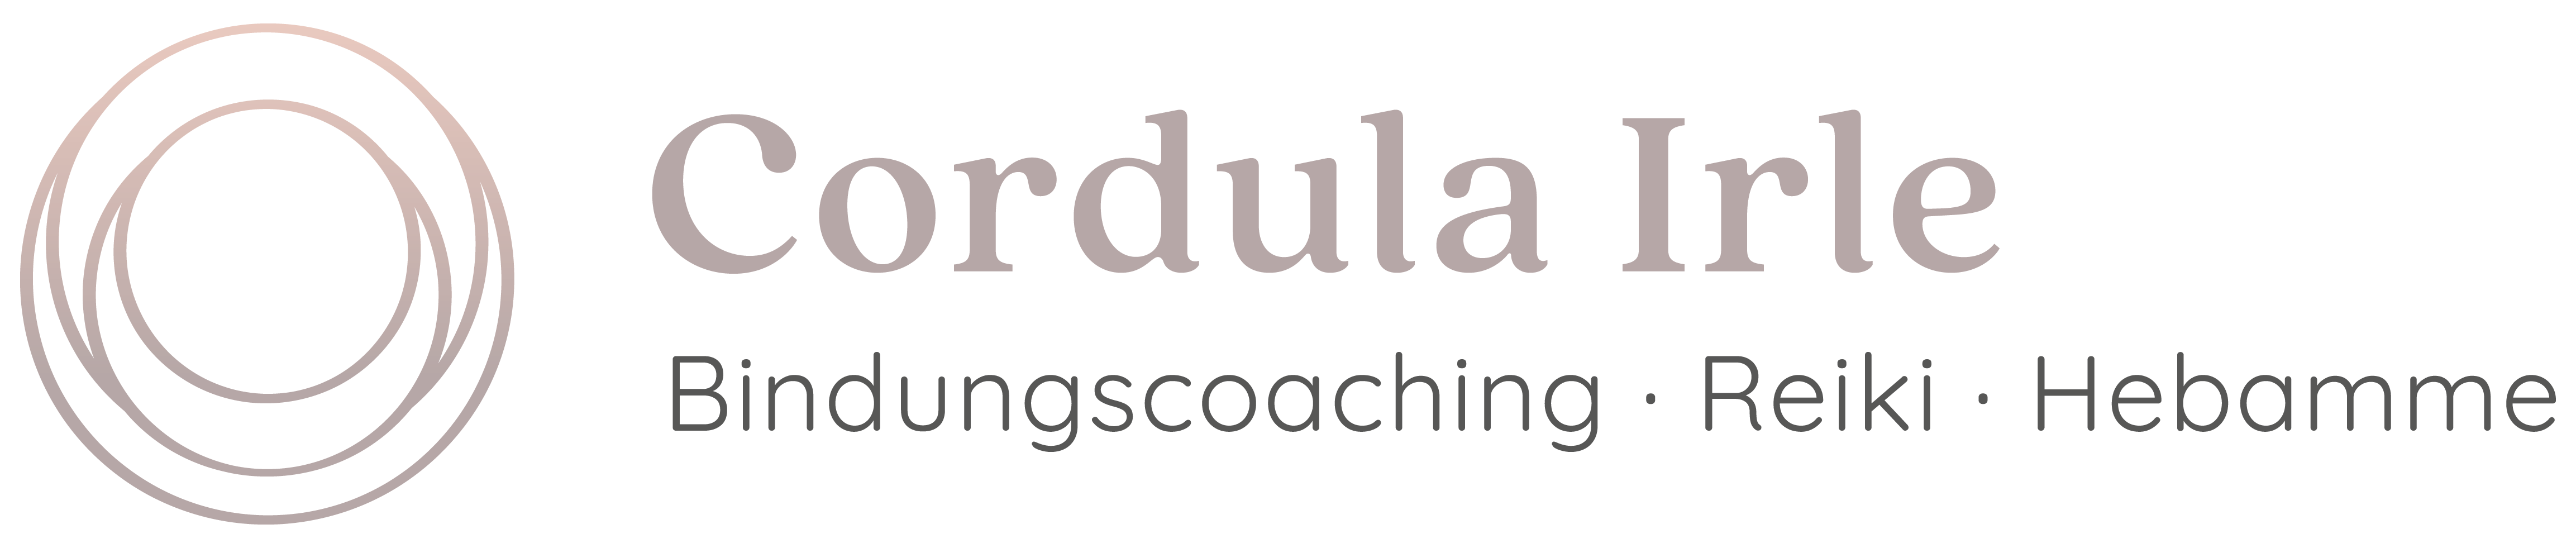 Cordula_Irle_Bindungscoaching_Logo